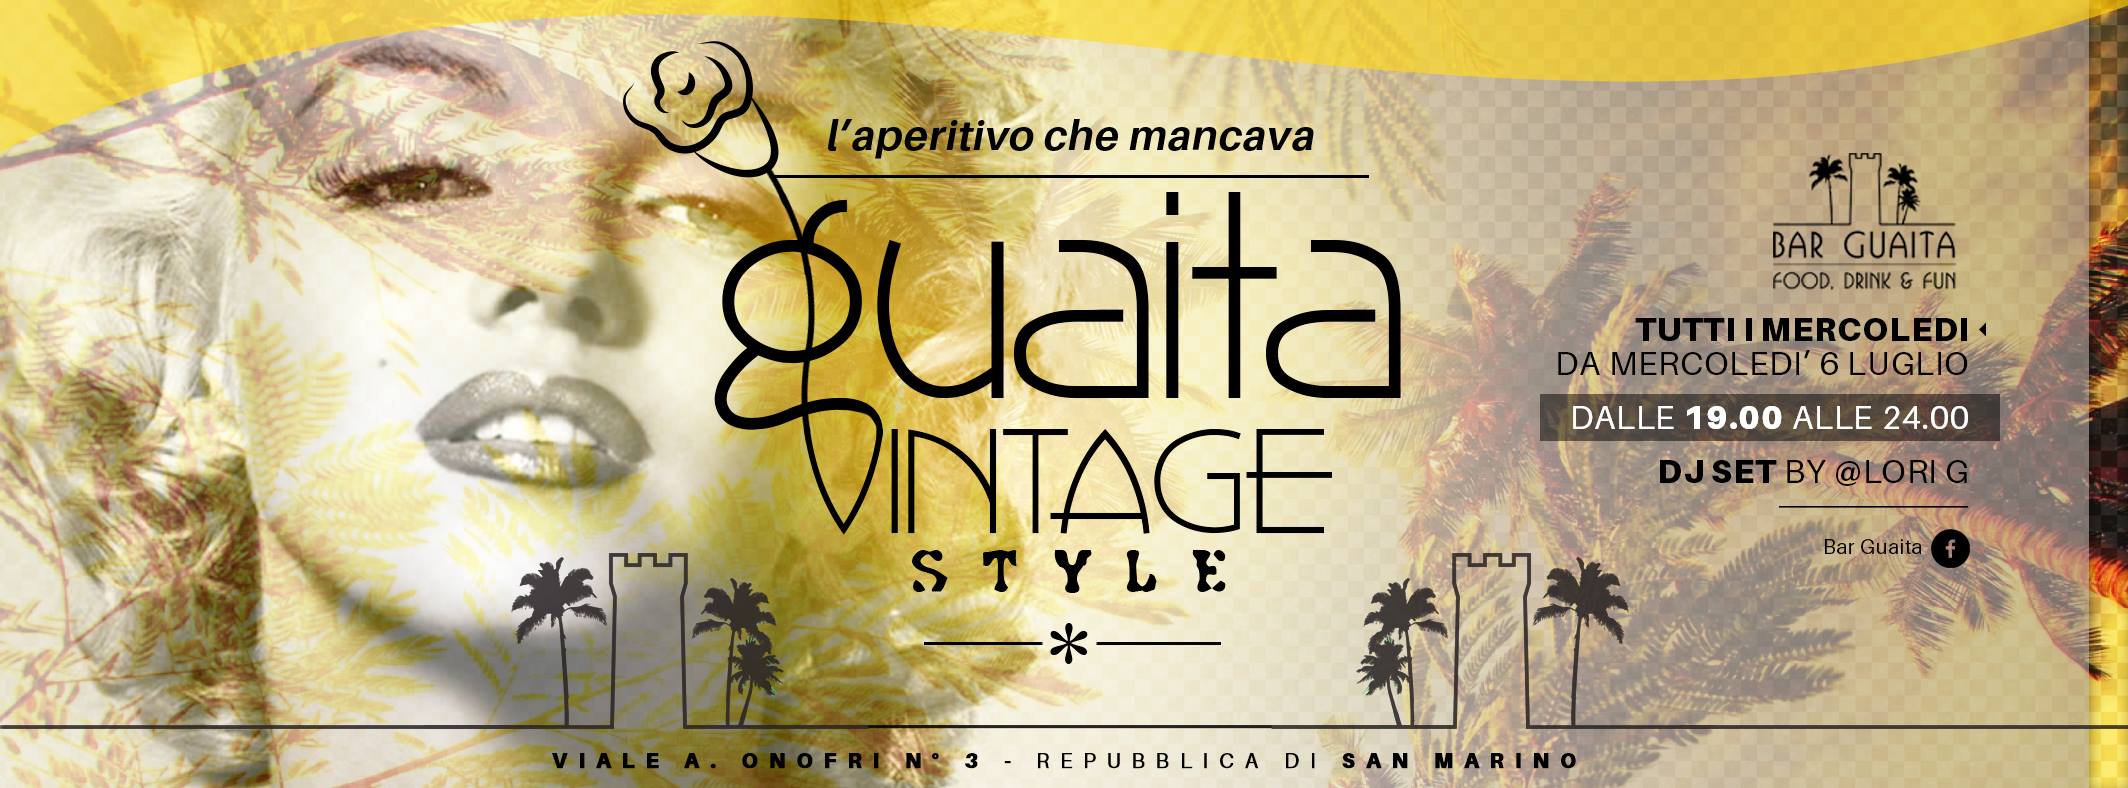 Guaita Vintage Style @ Bar Guaita San Marino